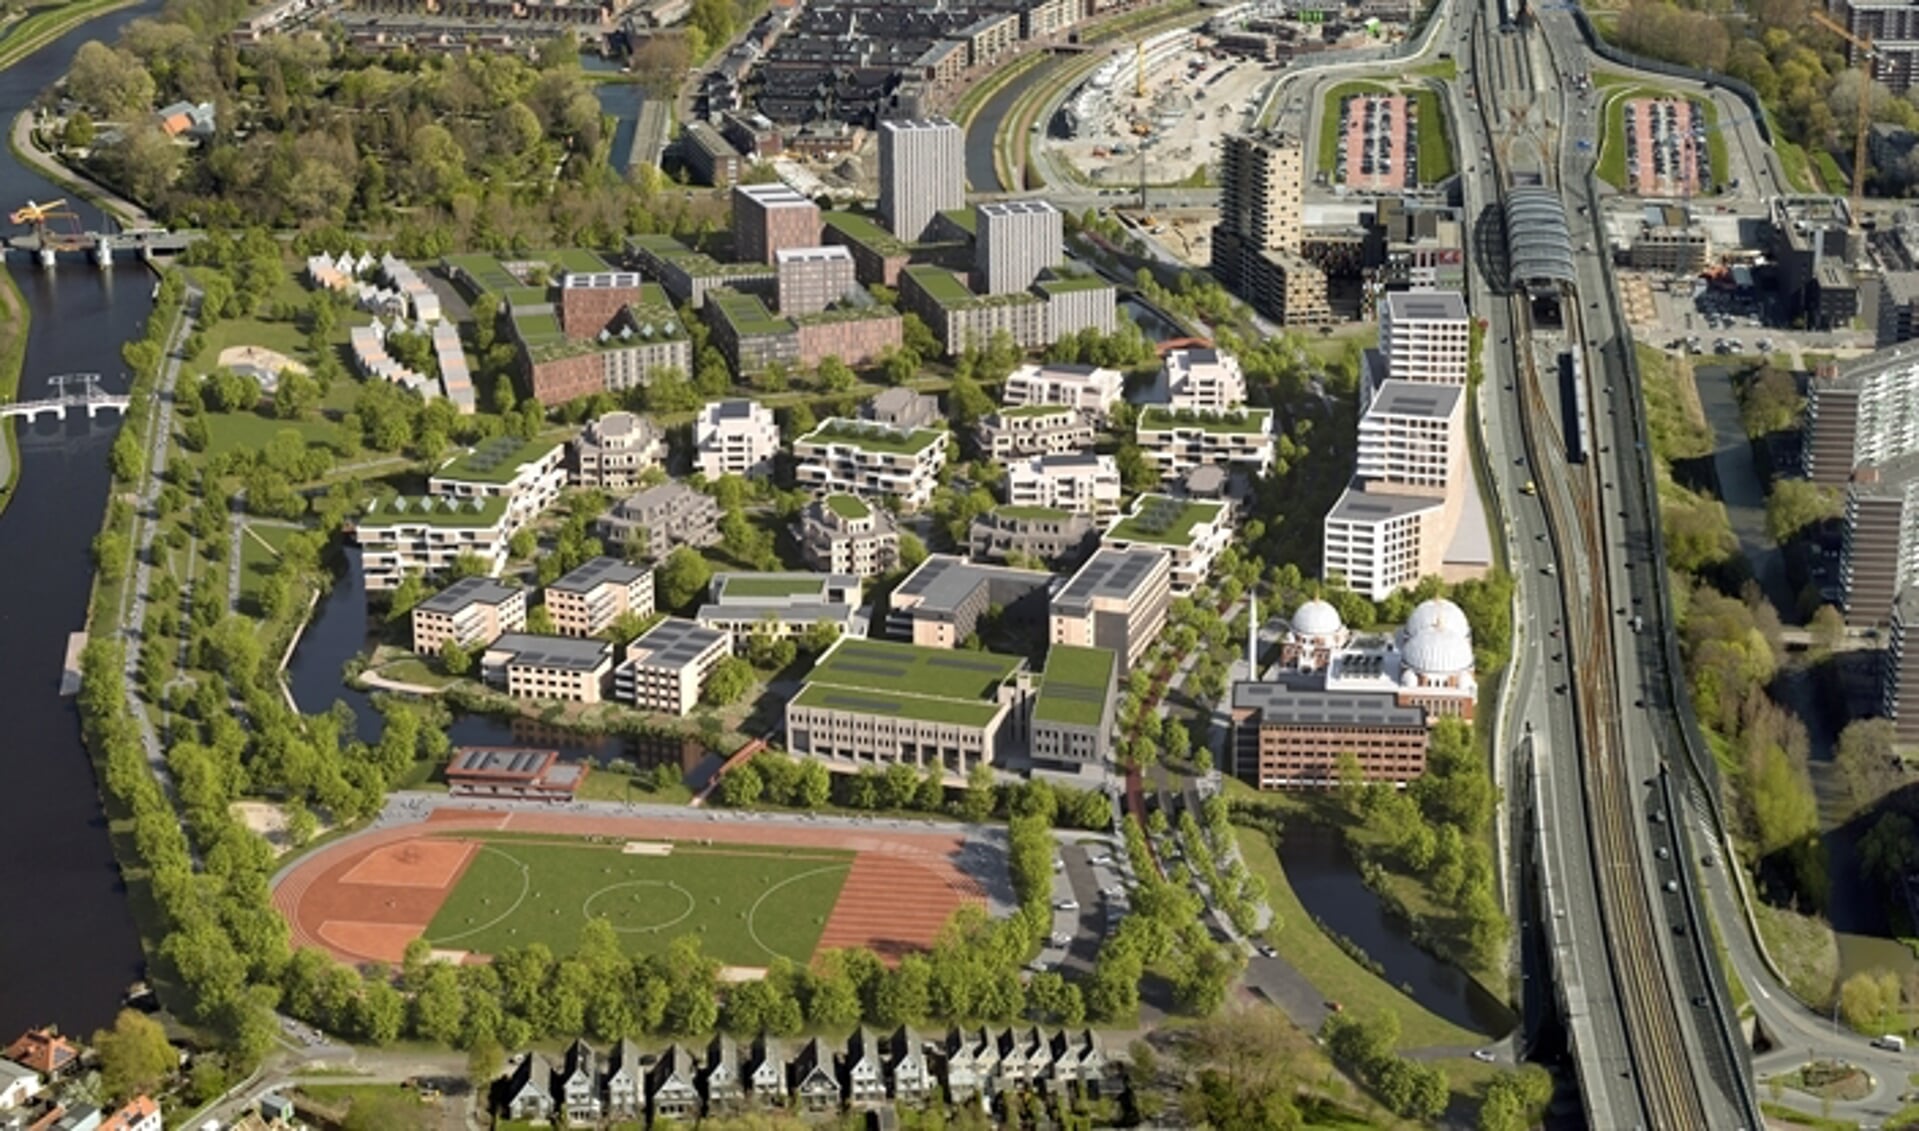 Elzenhagen Zuid wordt een stedelijke woonbuurt vol groen met ruimte voor 1.800 woningen en verschillende voorzieningen.